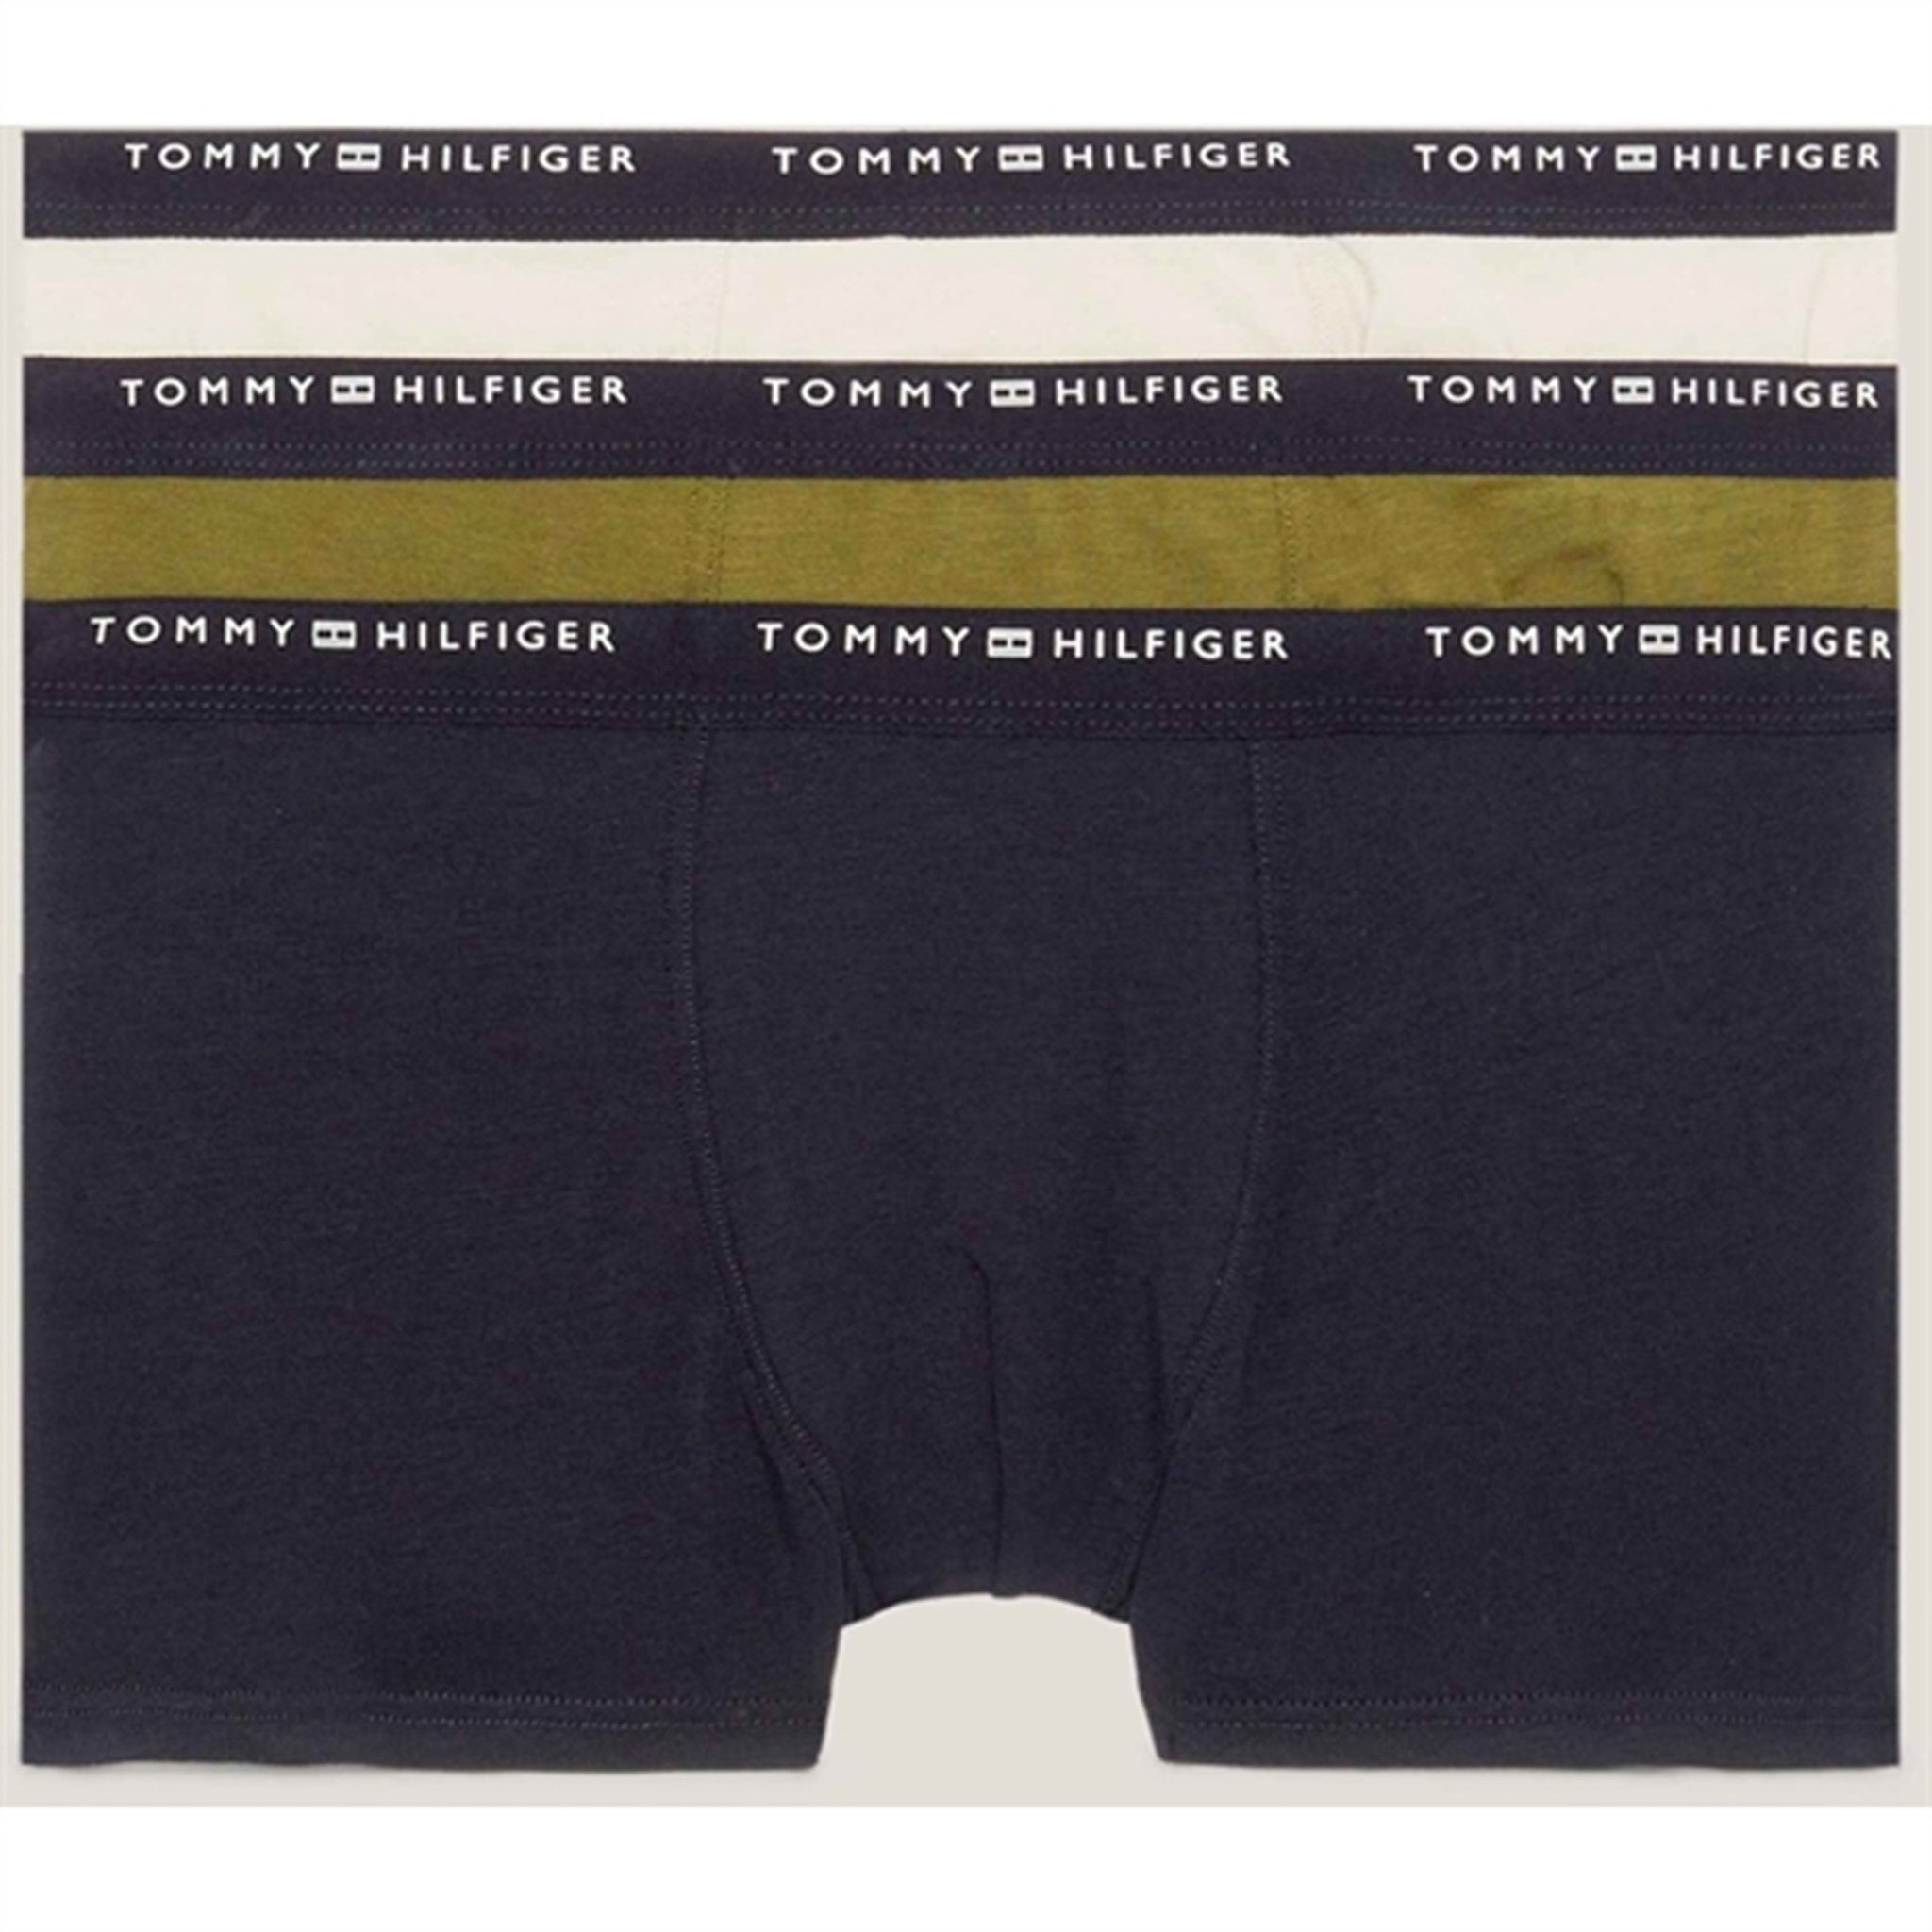 Tommy Hilfiger Trunks 3-Pack Desert Sk/ Put Green/ Cash Creme 2